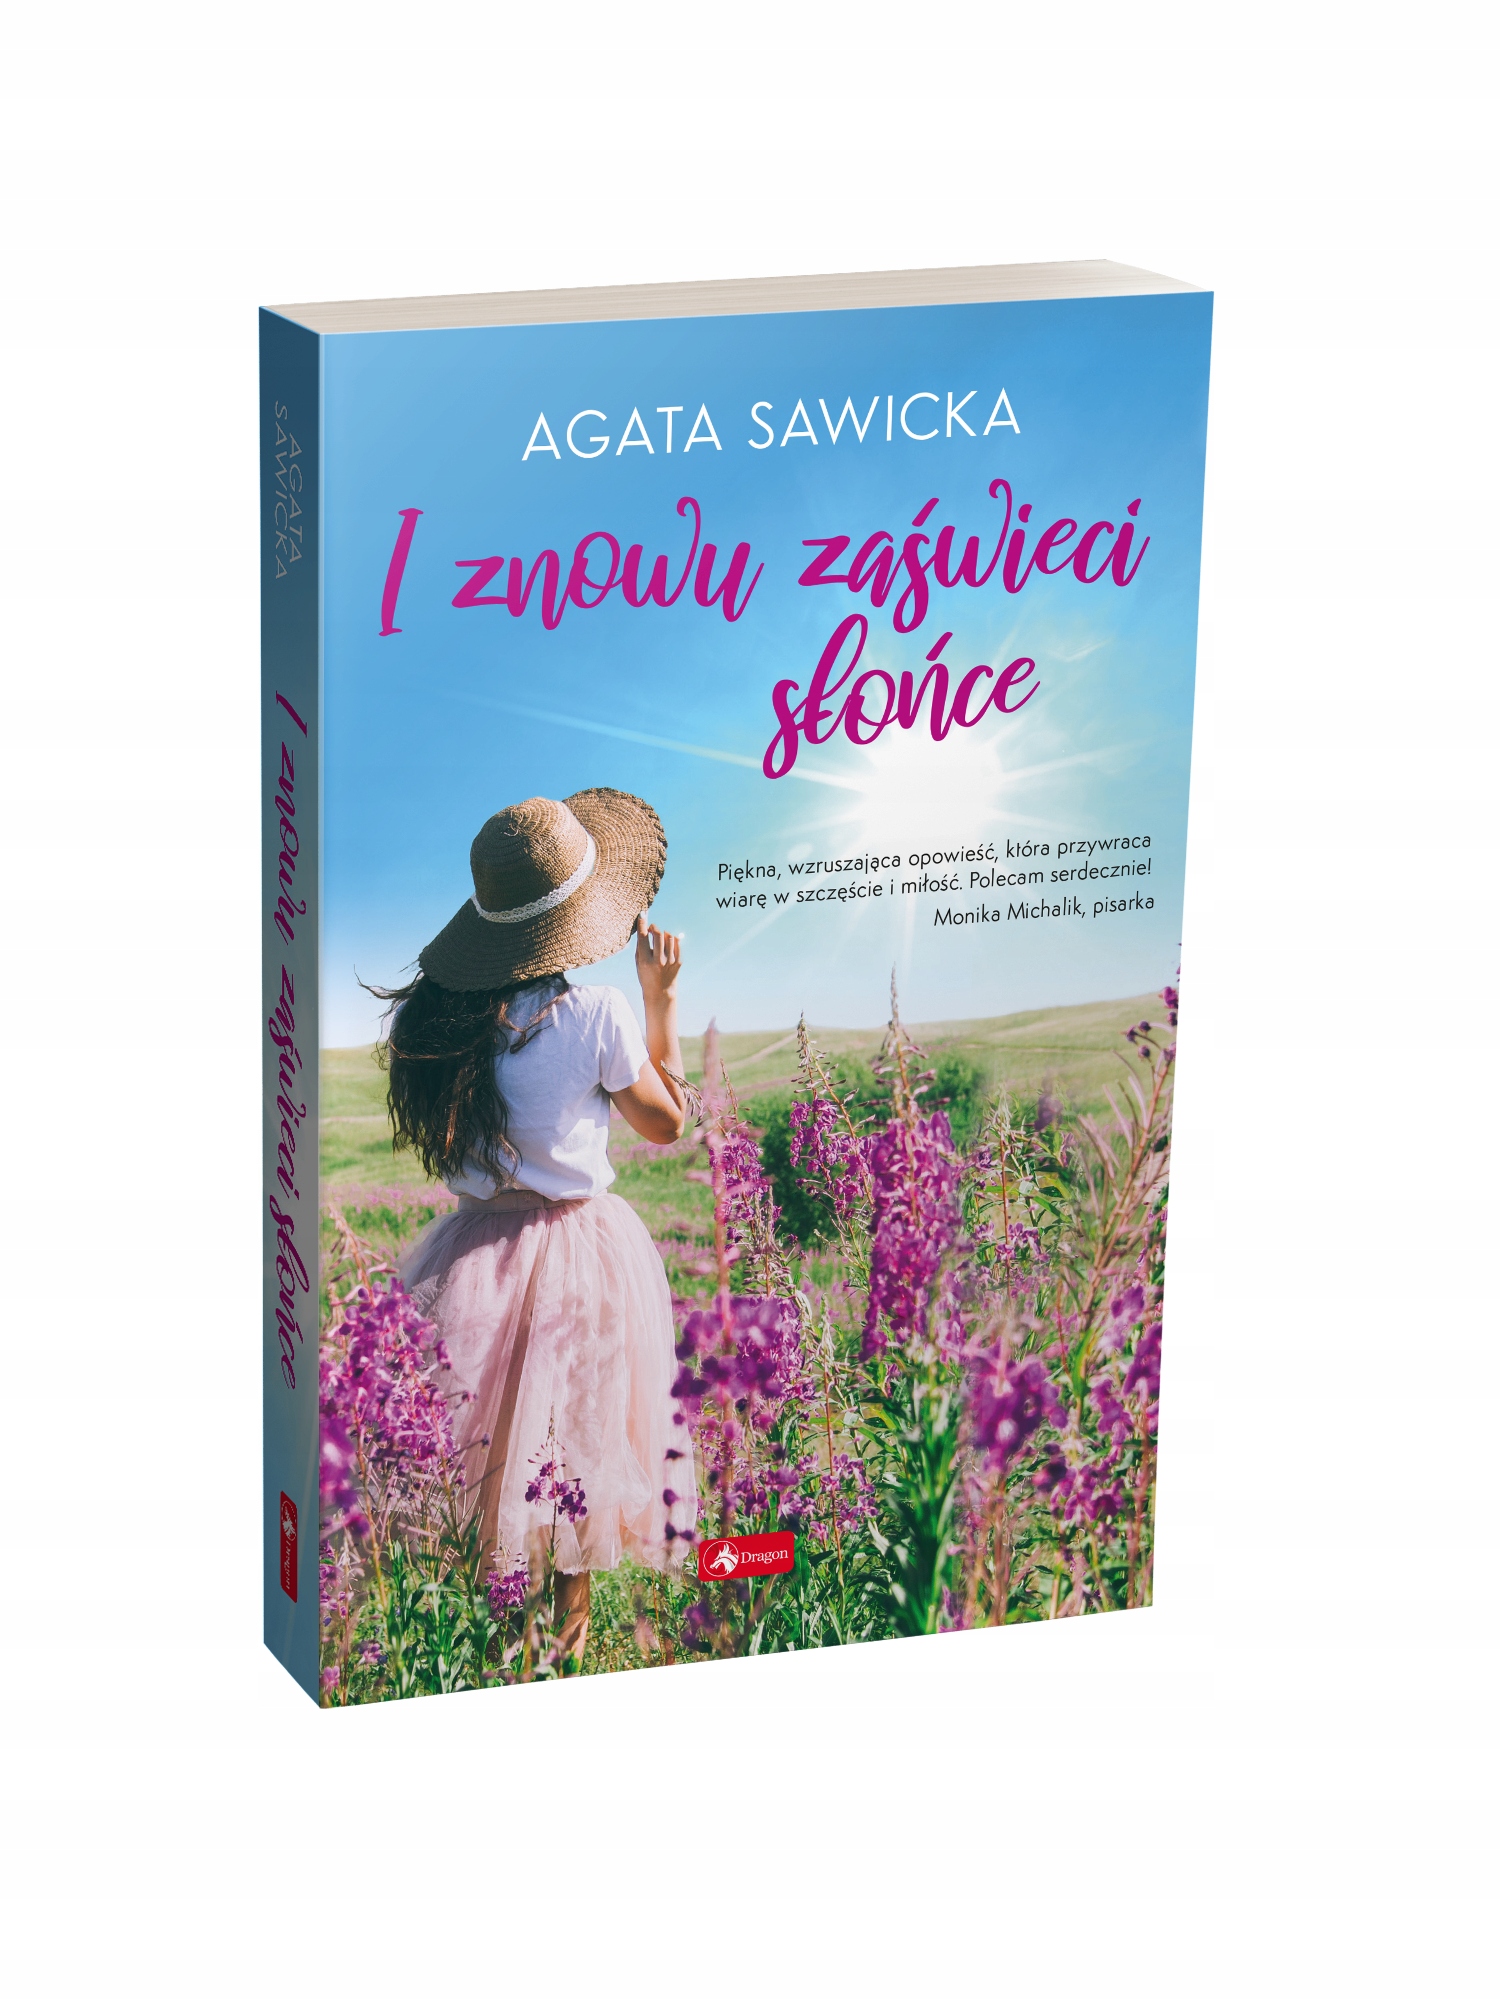 Seria Agata Sawicka obyczajowa Pakiet 4w1 Prezent Autor Agata Sawicka